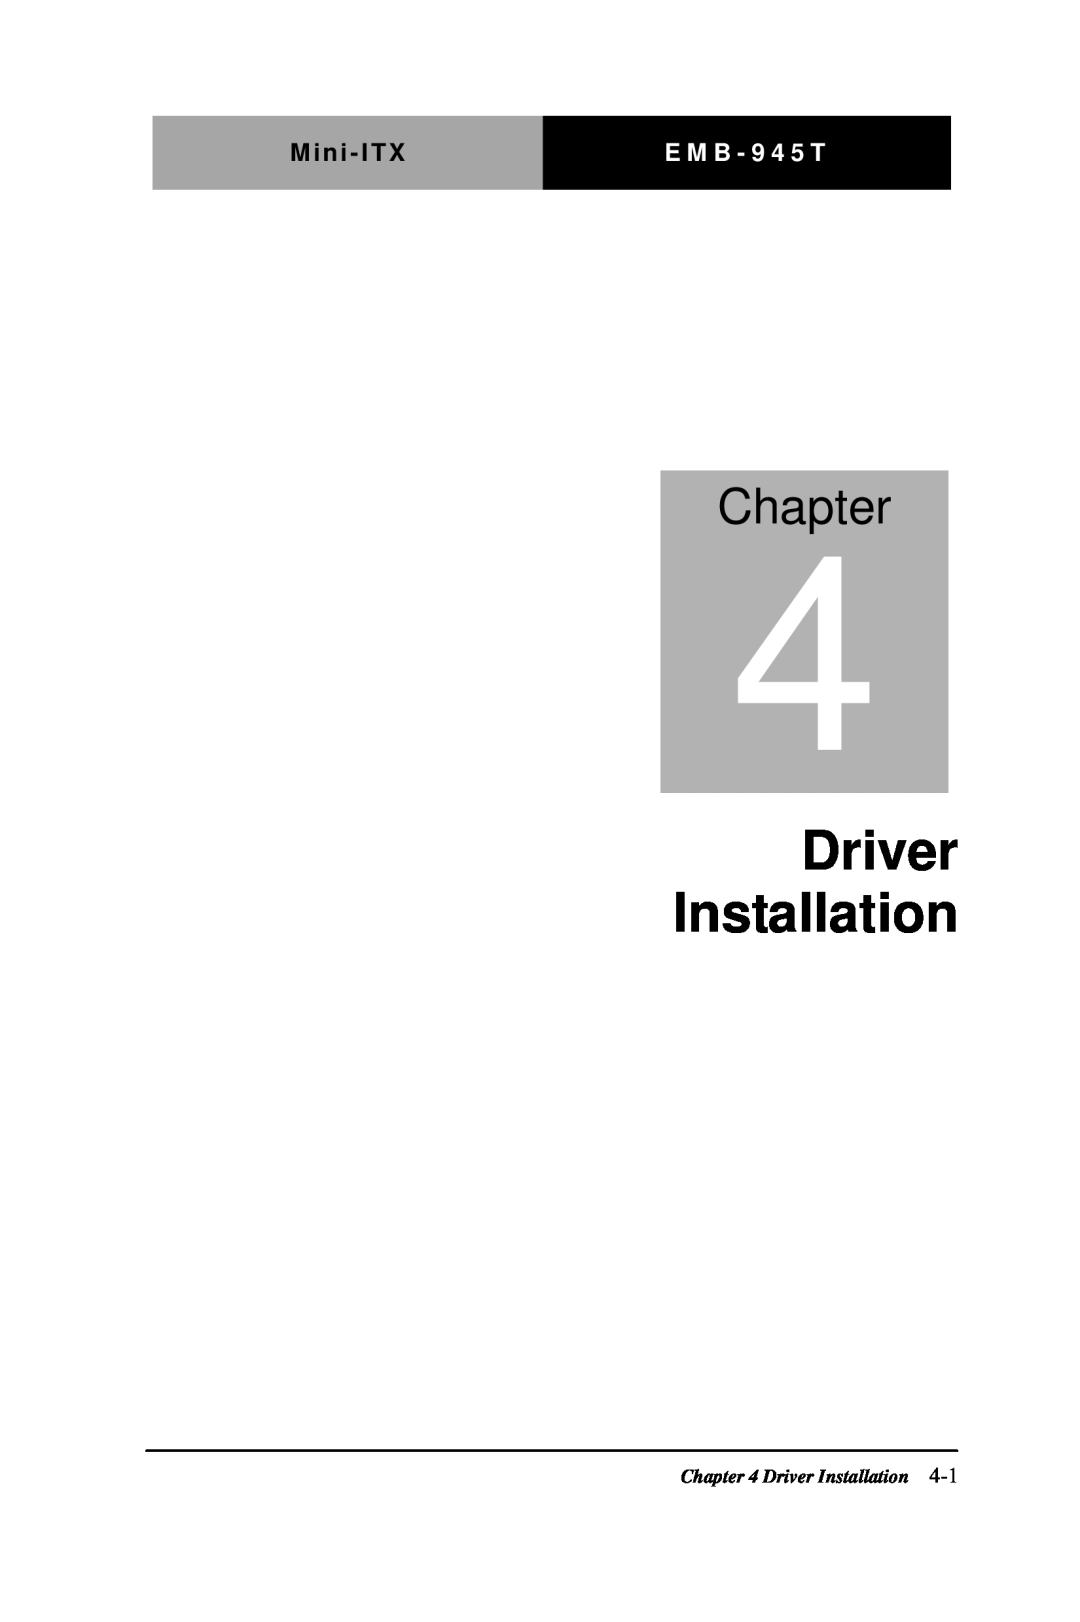 Intel EMB-945T manual Driver Installation, Chapter, Mini - ITX, E M B - 9 4 5 T 